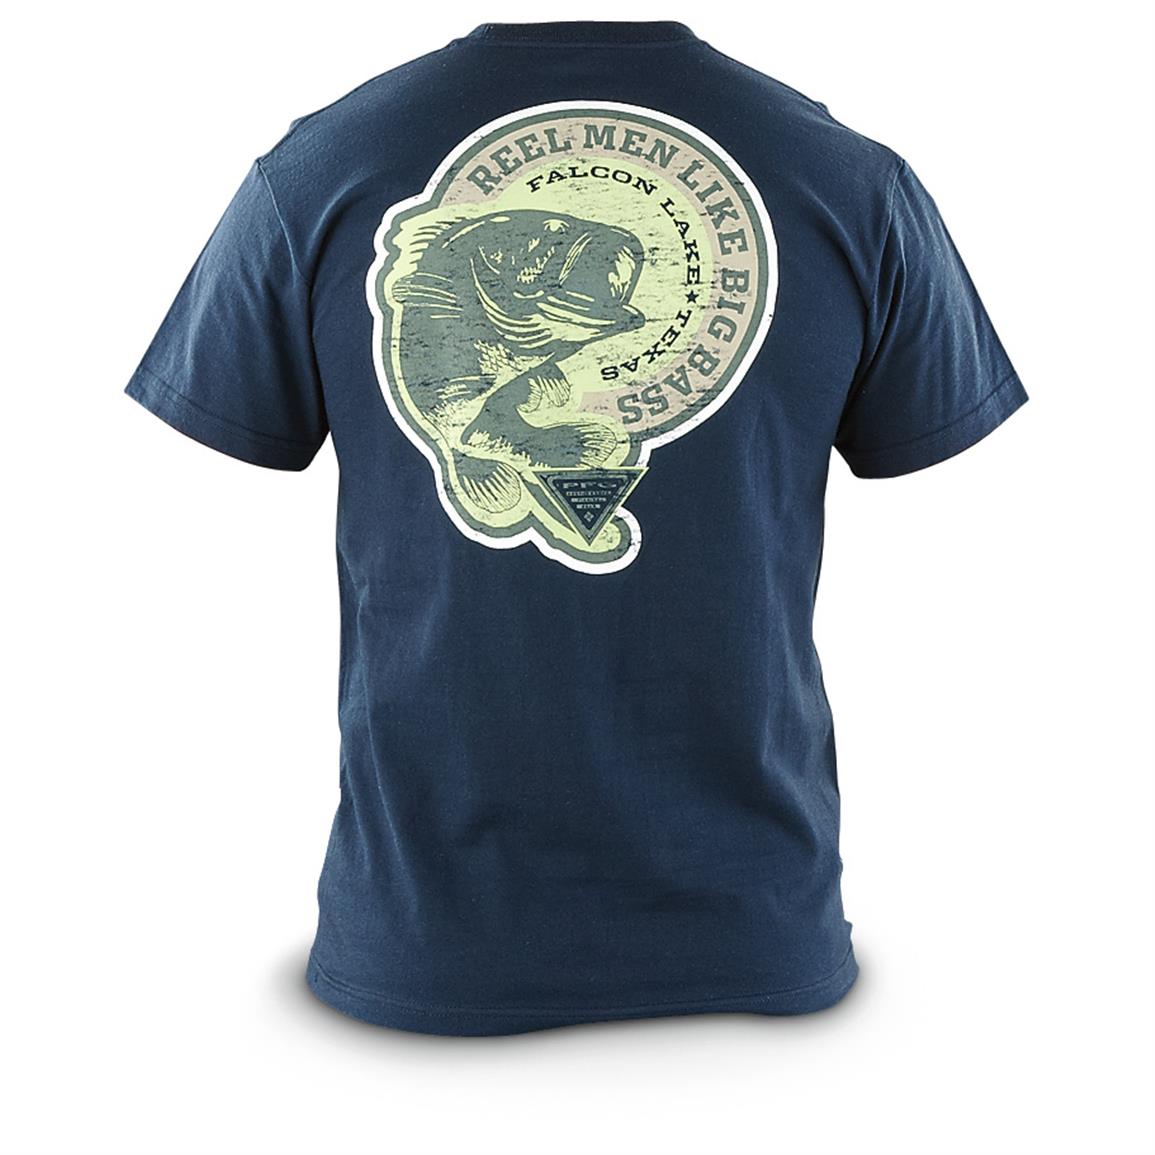 Columbia PFG Pretty Freakin' Great T-shirt - 619115, T-Shirts at ...